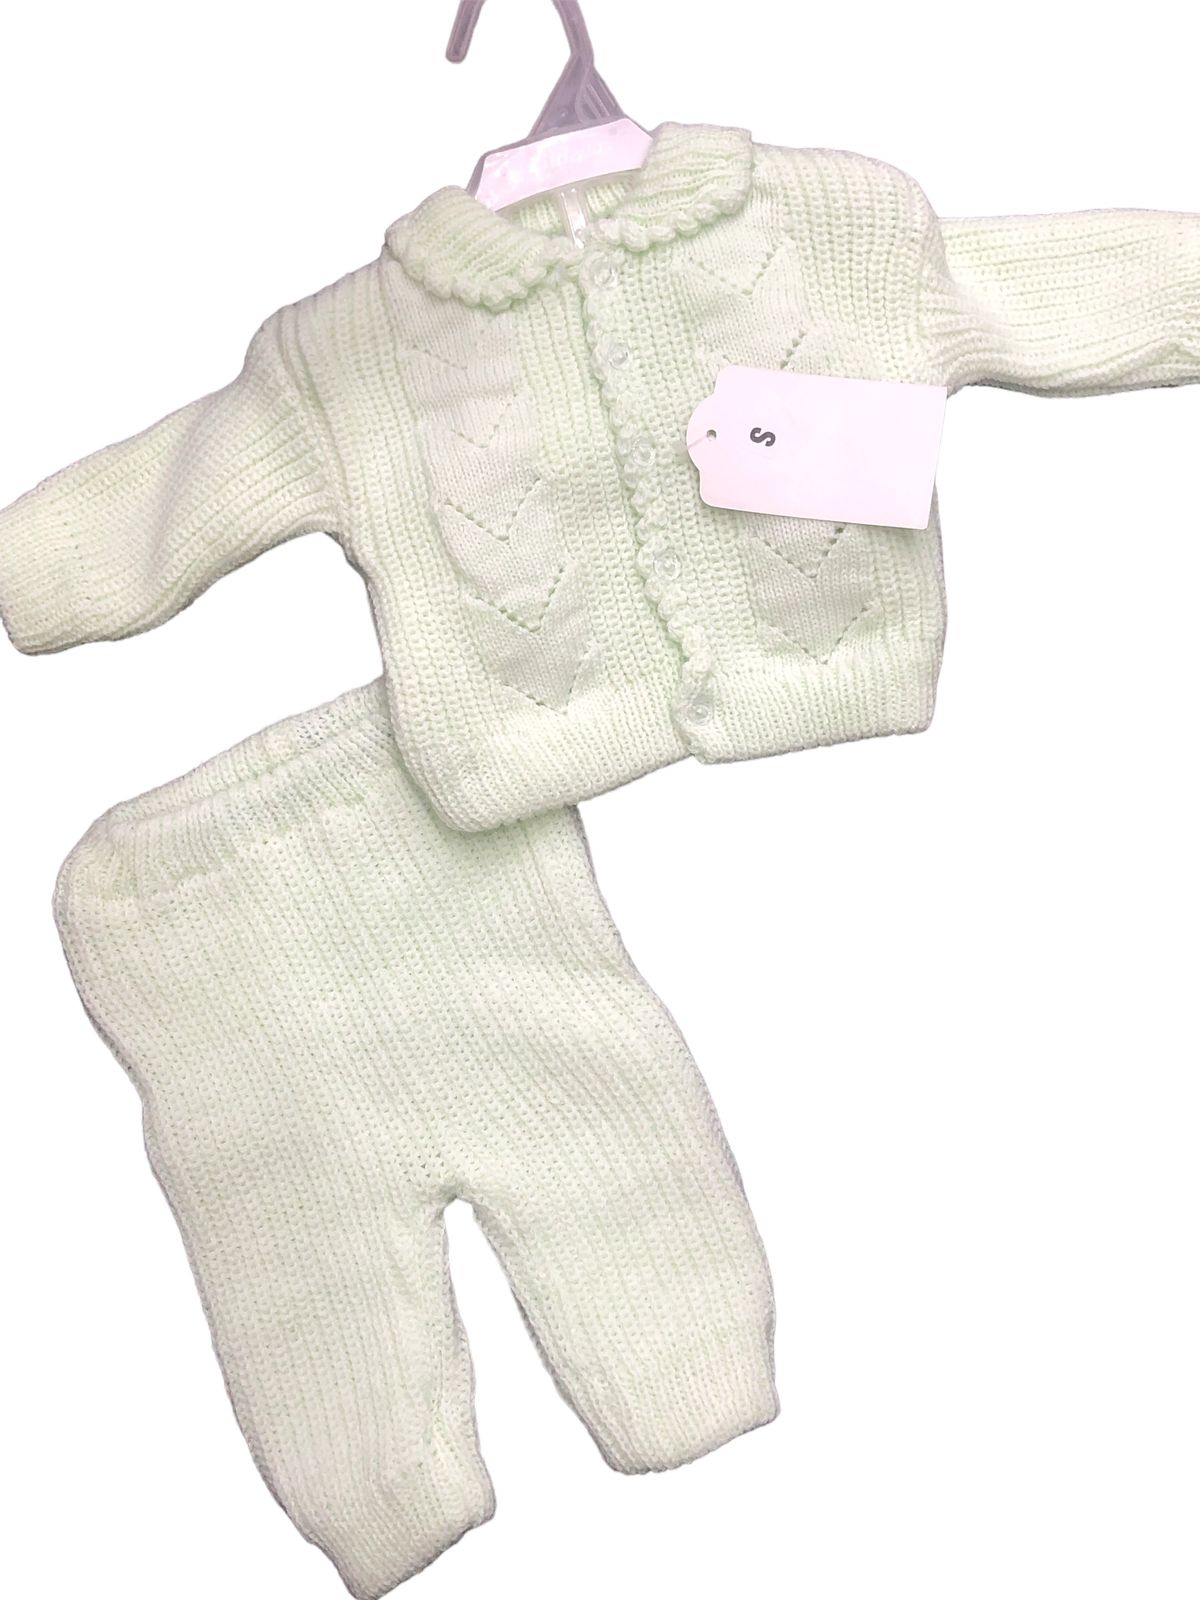 Baby woolen suit  with cap